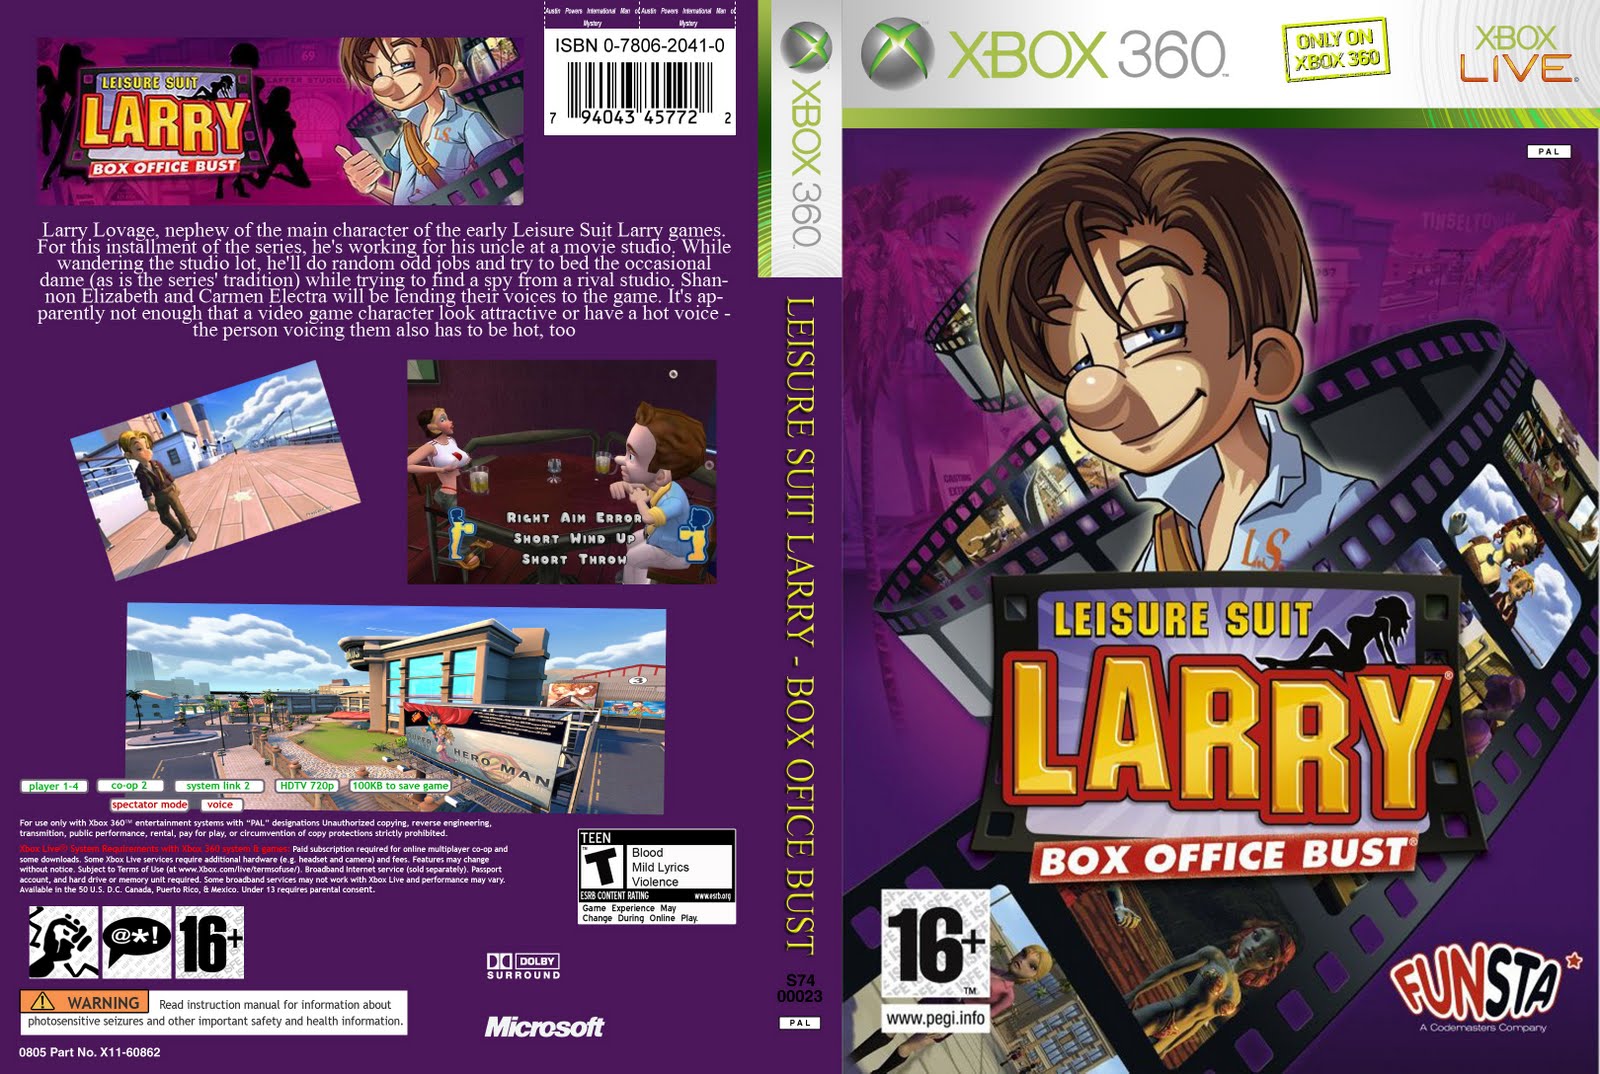 Larry box. Leisure Suit Larry: Box Office Bust. Leisure Suit Larry Box Office Bust 18. Xbox 360 Leisure Suit Larry Box Office Bust обложки. Leisure Suit Larry Box Office Bust (Xbox 360) lt+3.0.